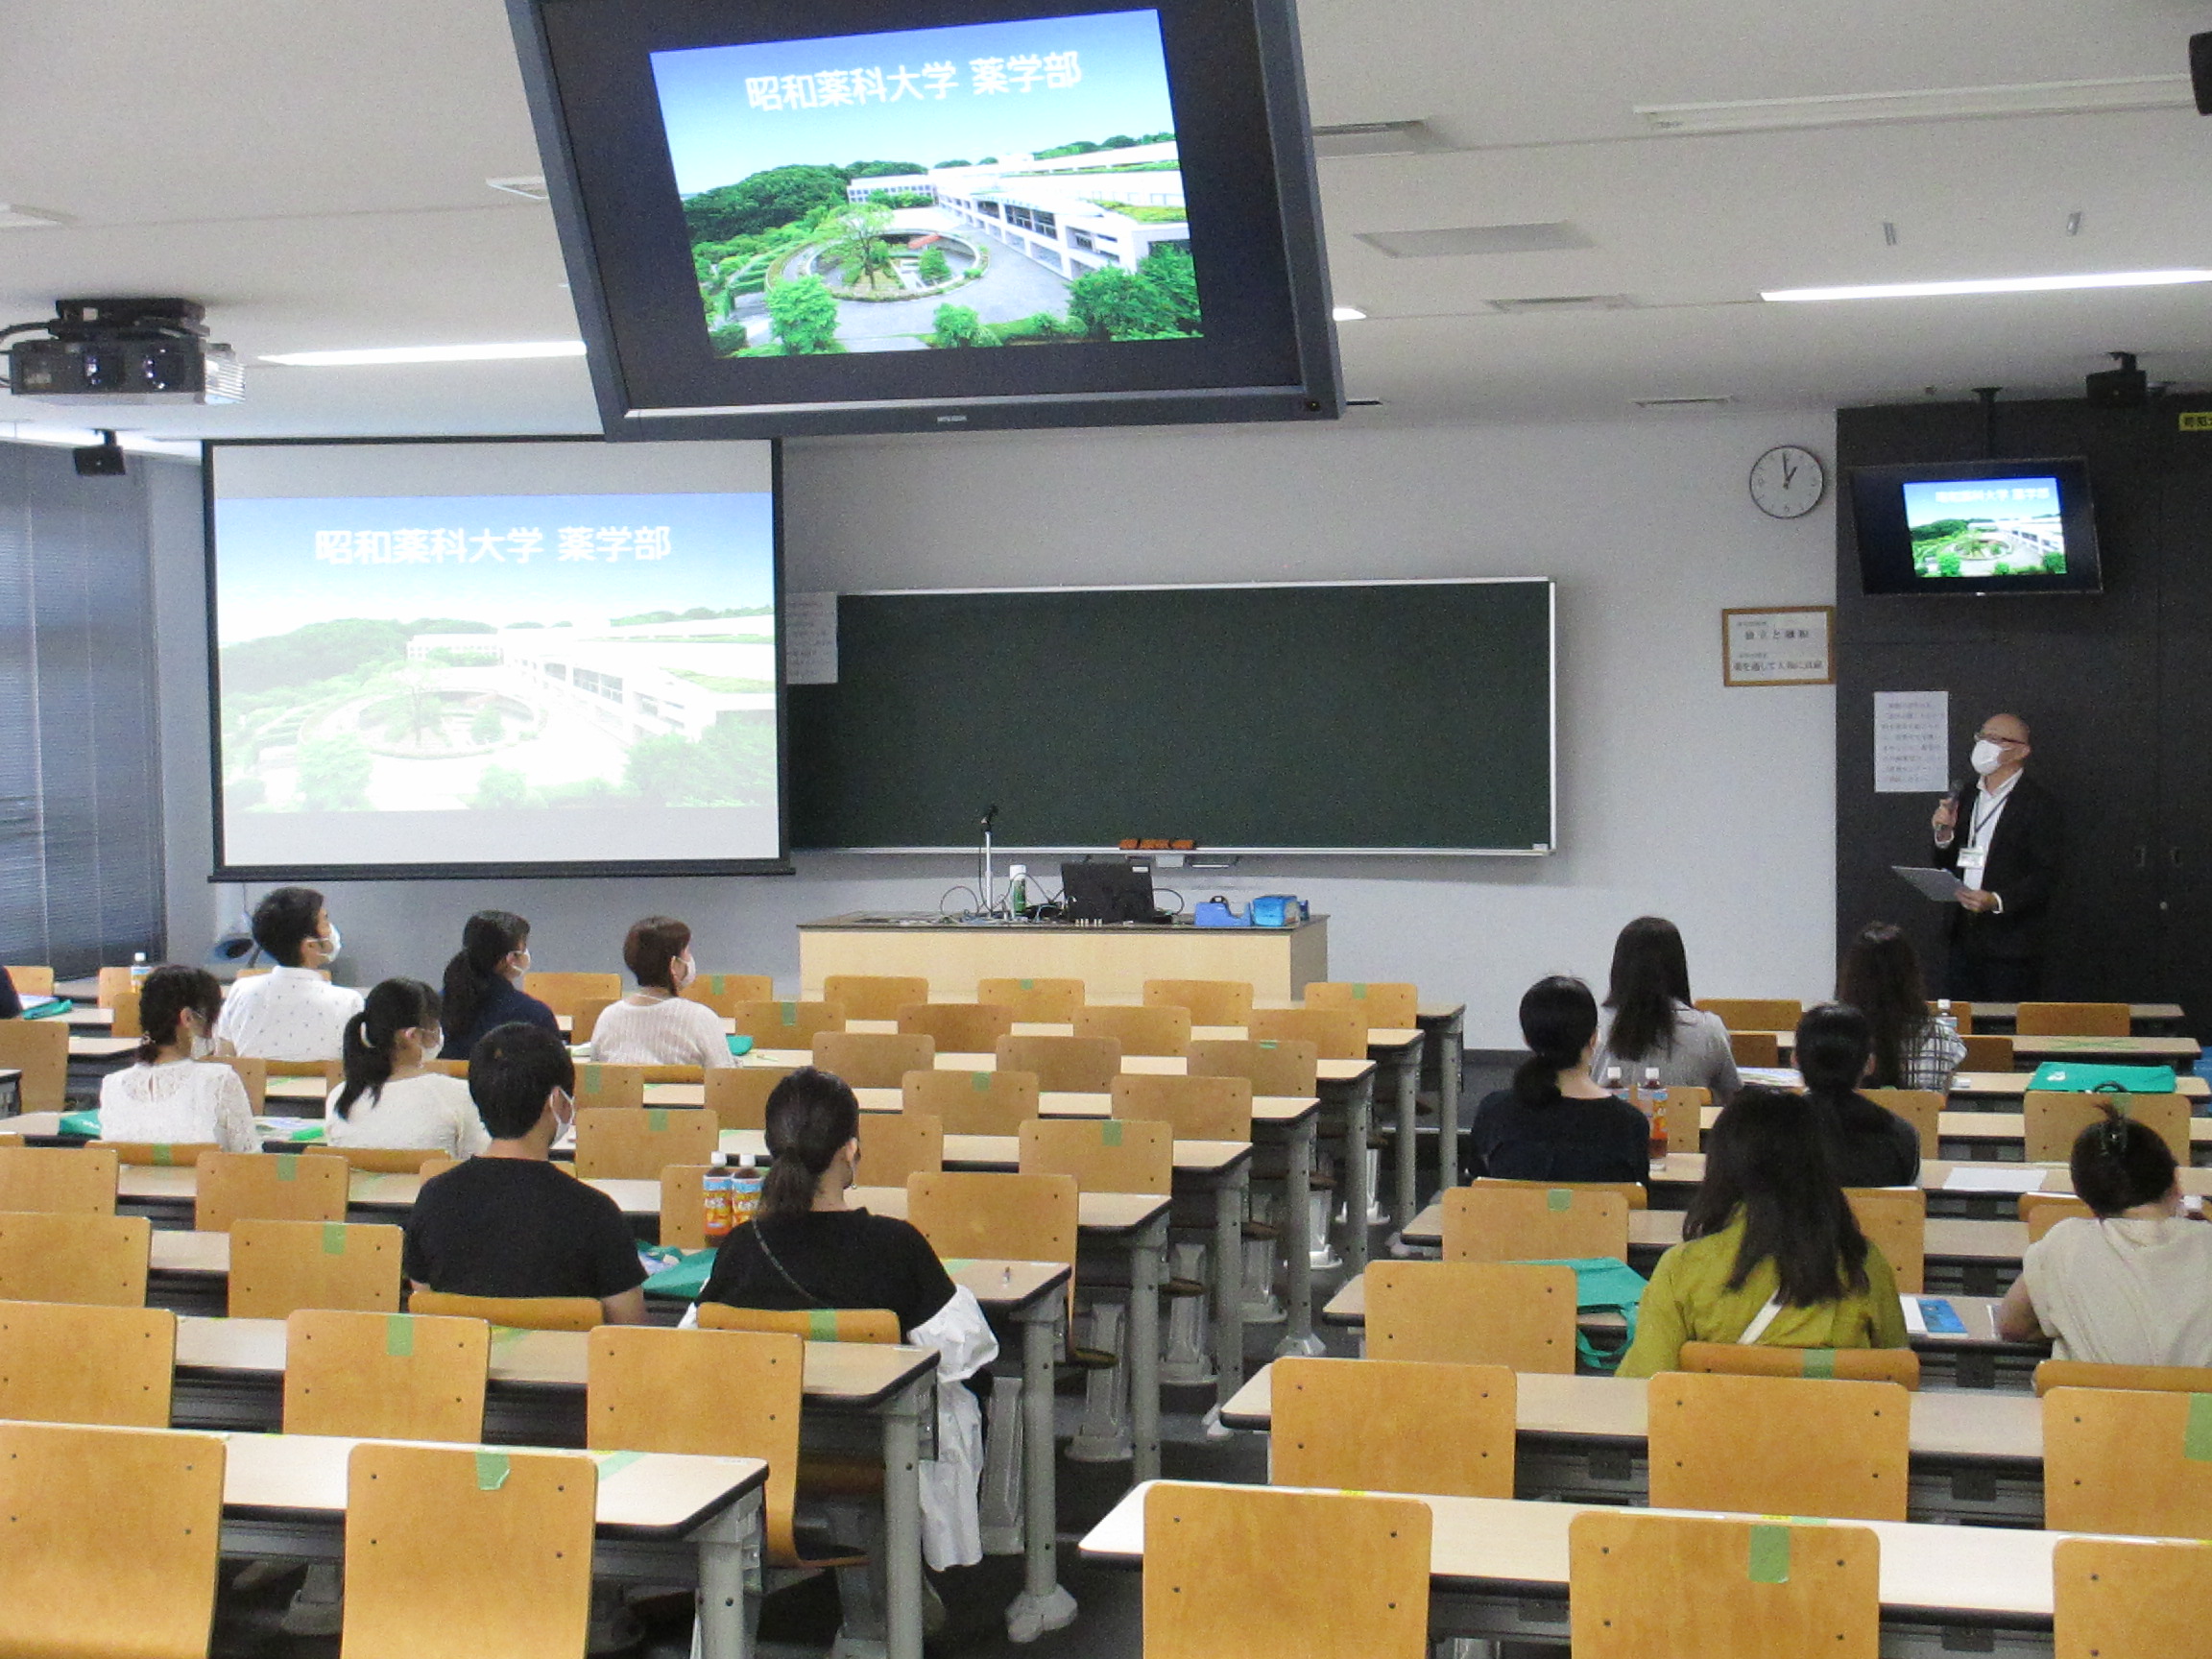 昭和薬科大学のミニオープンキャンパス